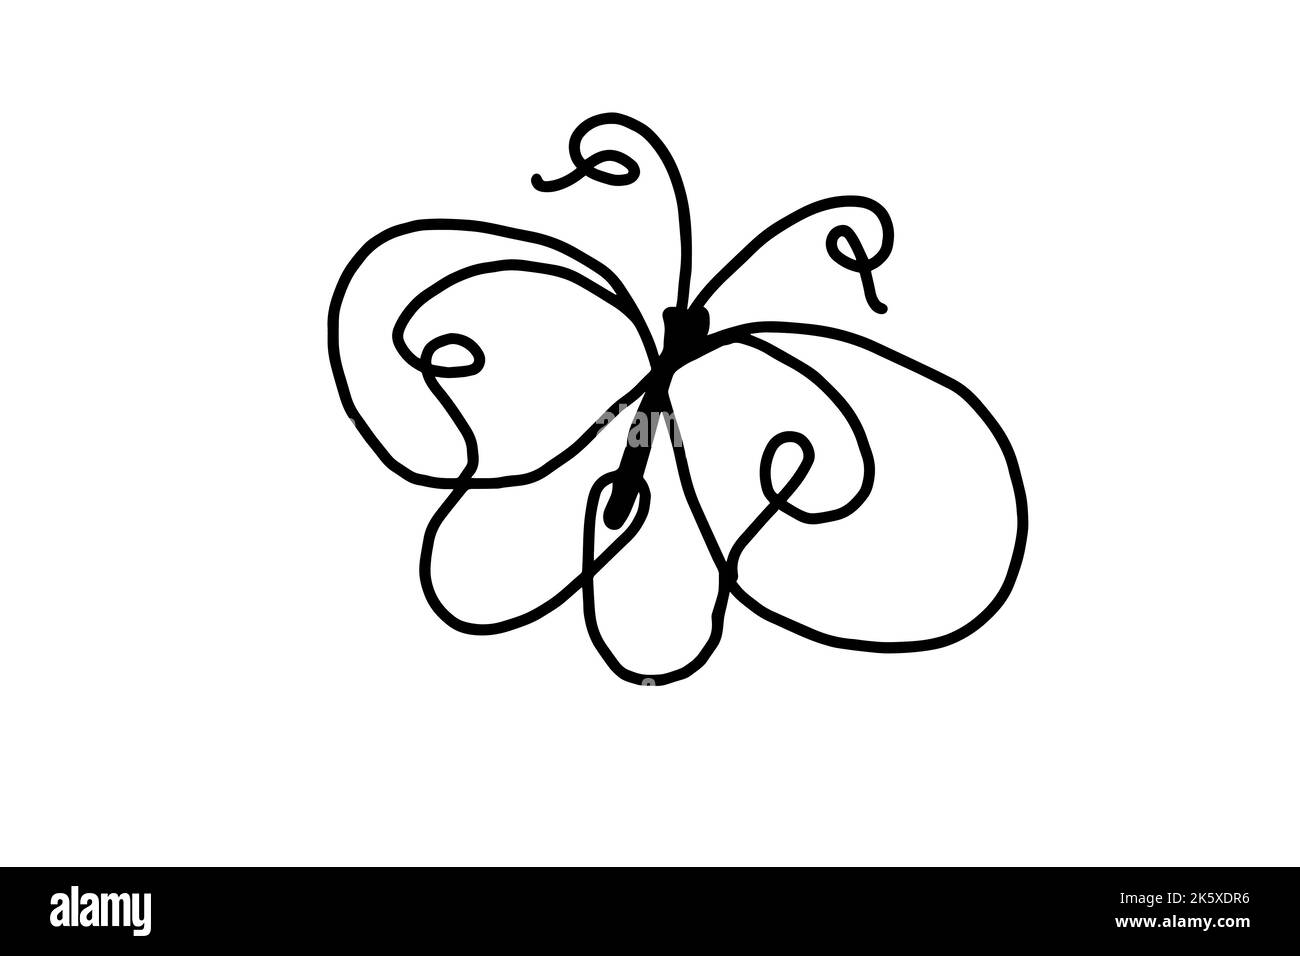 dessin de papillon avec une ligne noire. Illustration vectorielle Illustration de Vecteur